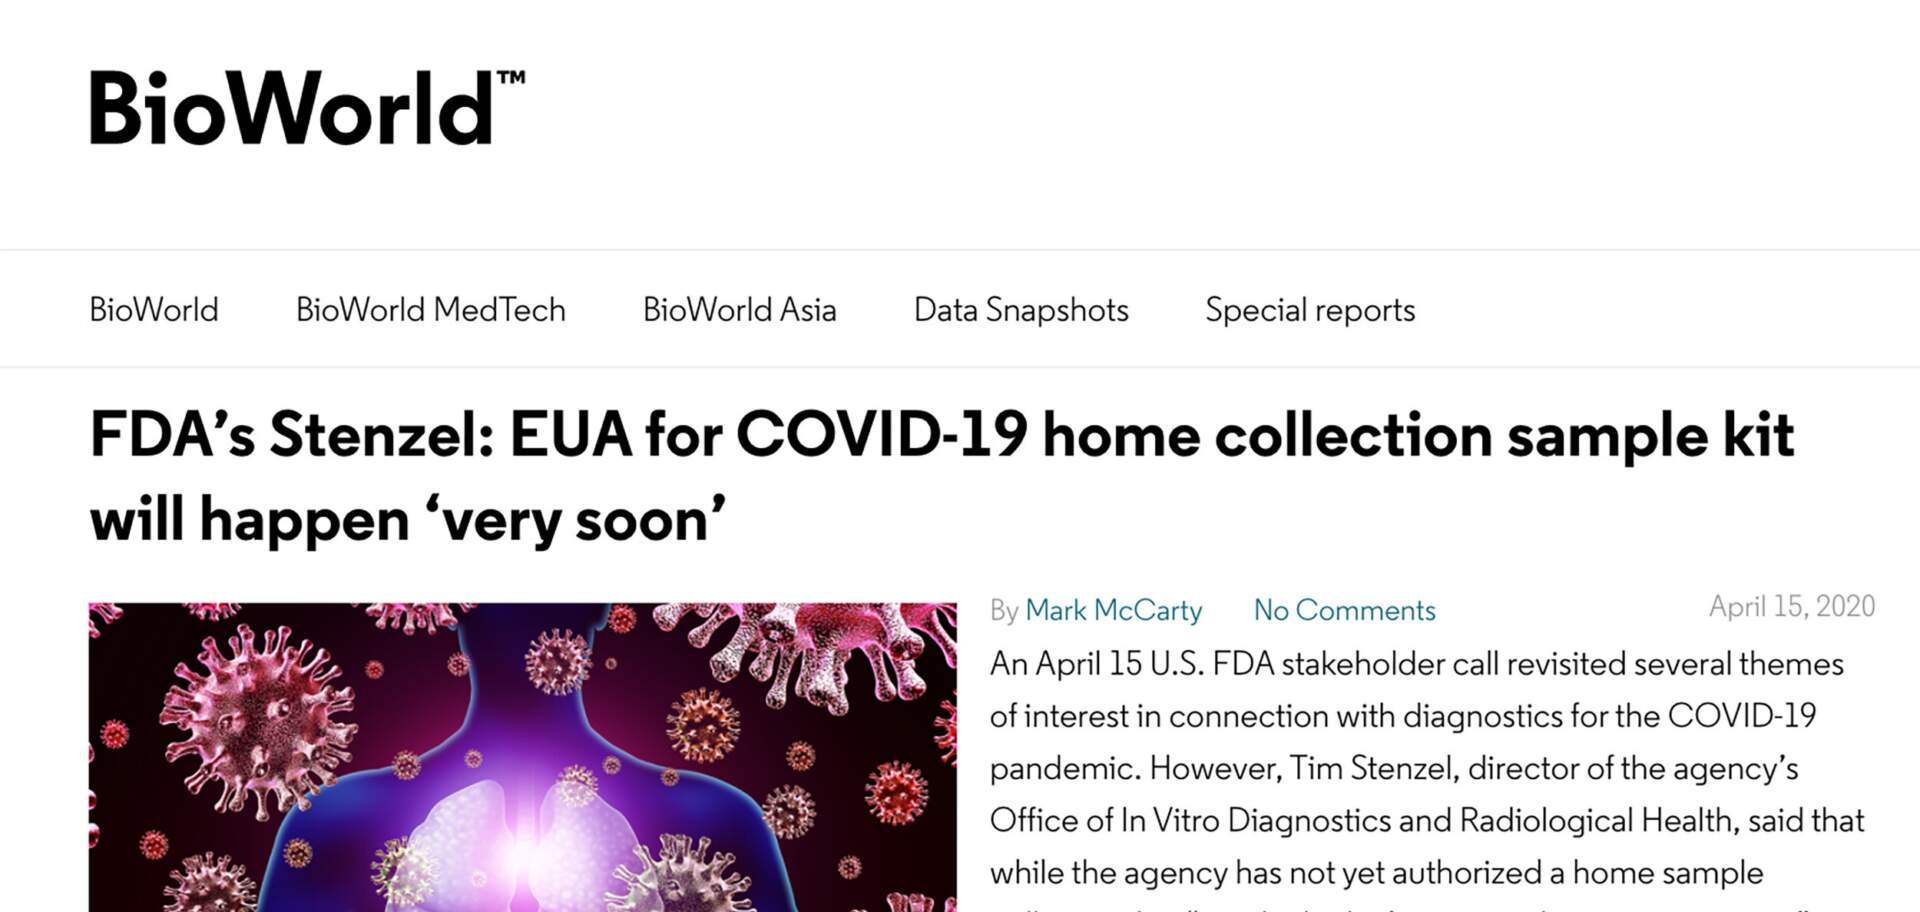 FDA EUA for home collection coming soon